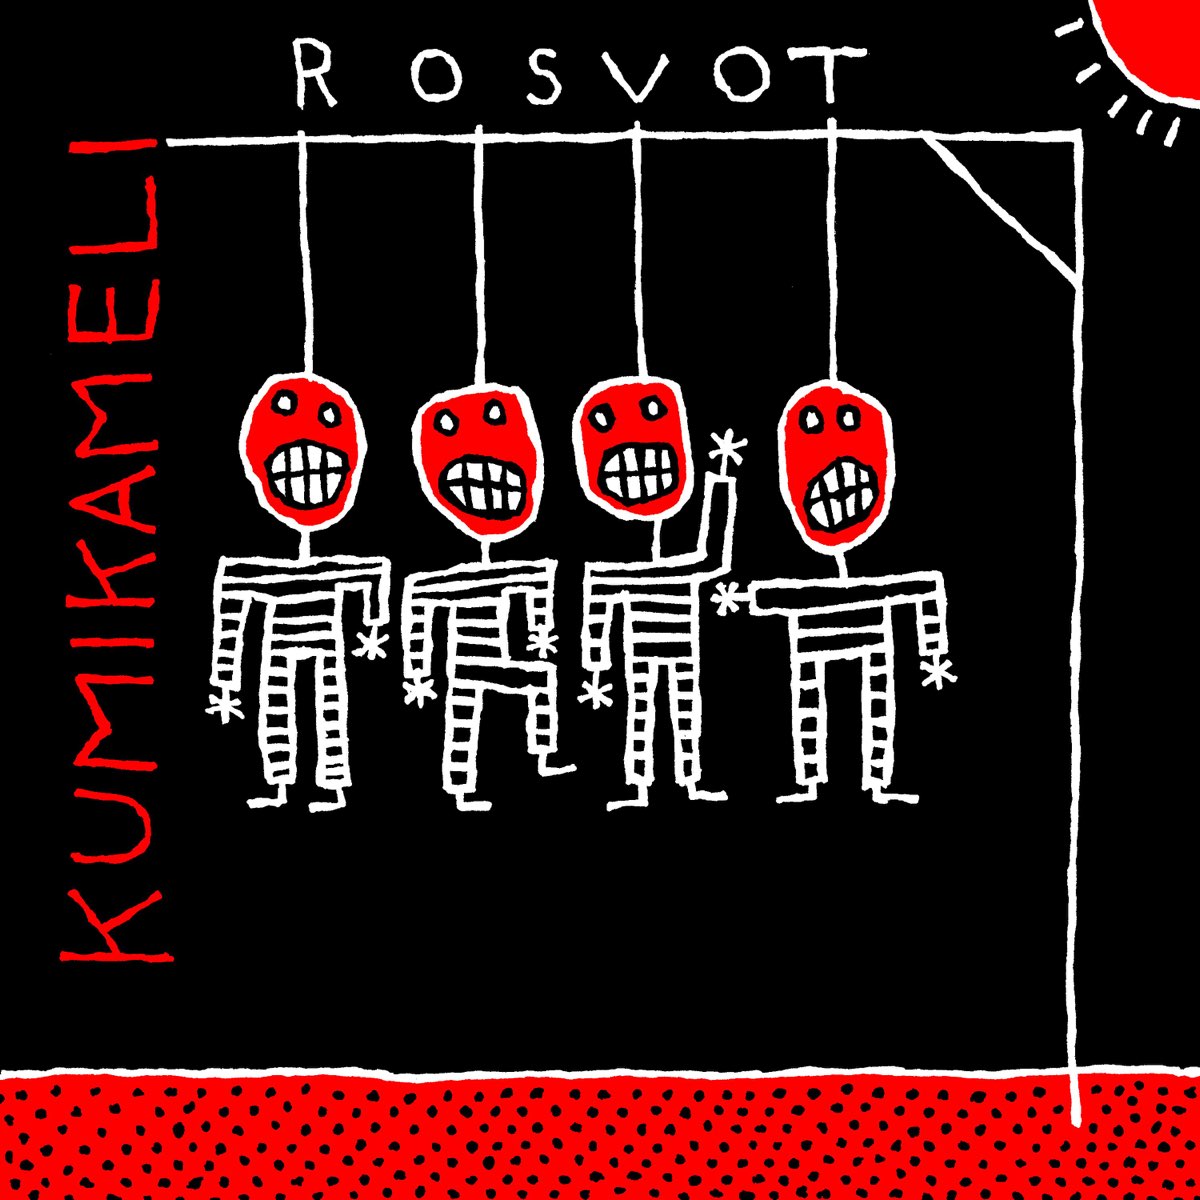 Rosvot - Single by Kumikameli on Apple Music